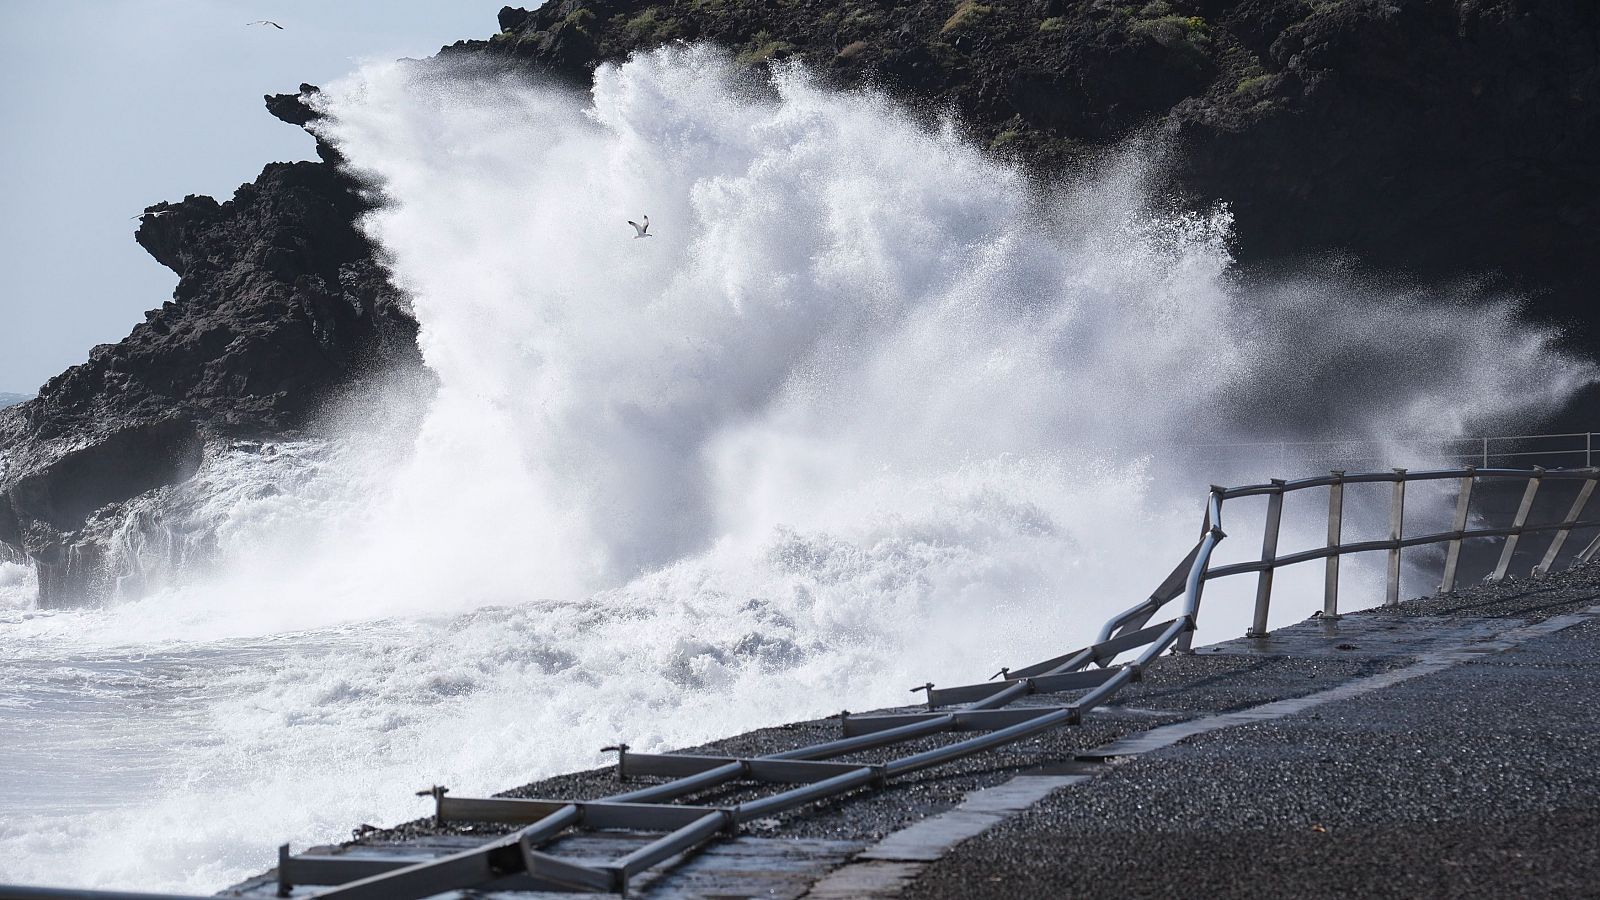 Fallece turista al caer al mar en Tenerife mientras hacía fotos